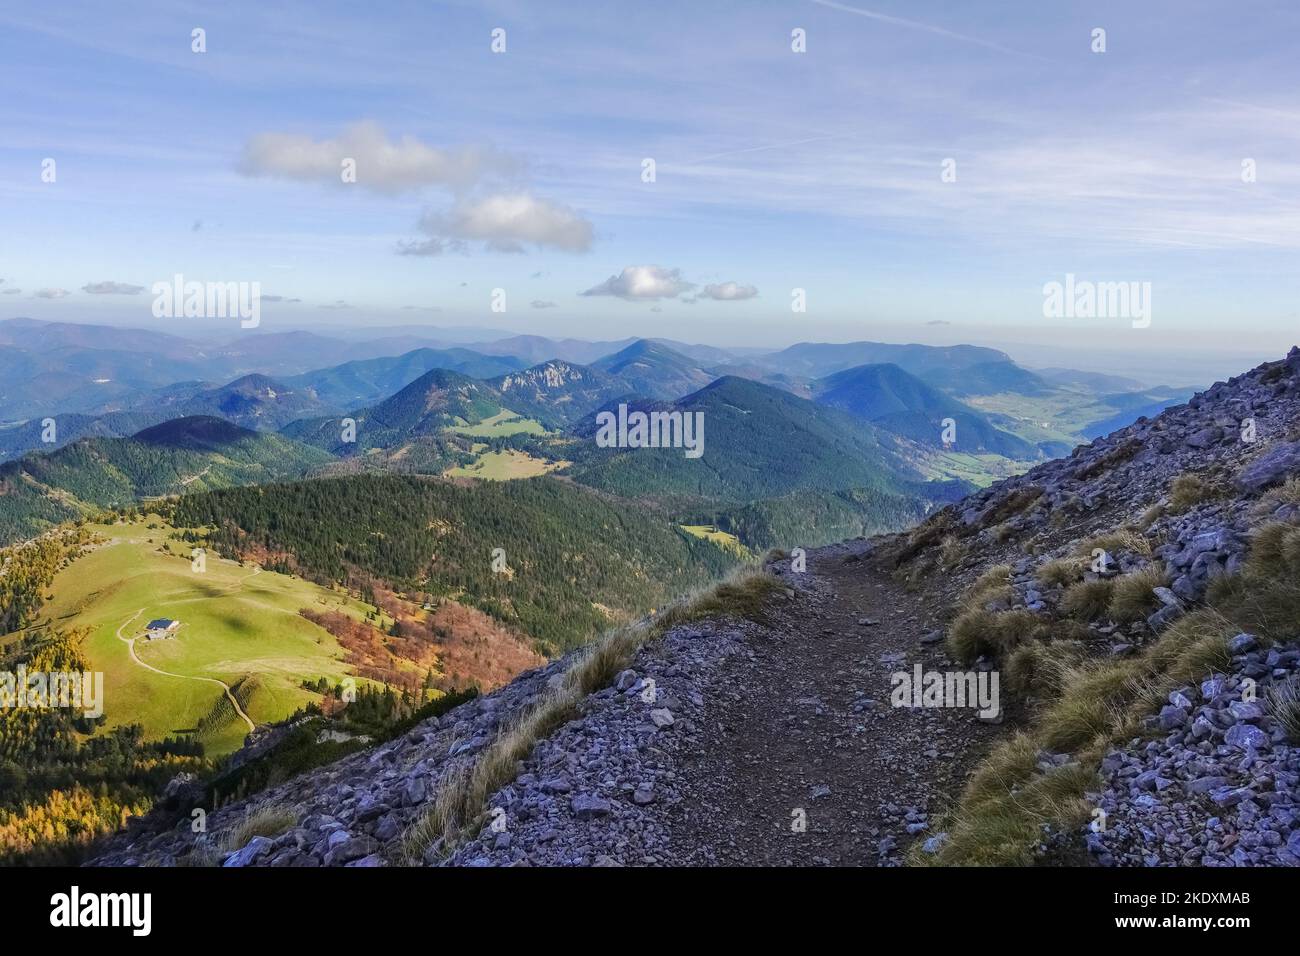 incredibile sentiero su una ripida montagna con una splendida vista sul paesaggio Foto Stock